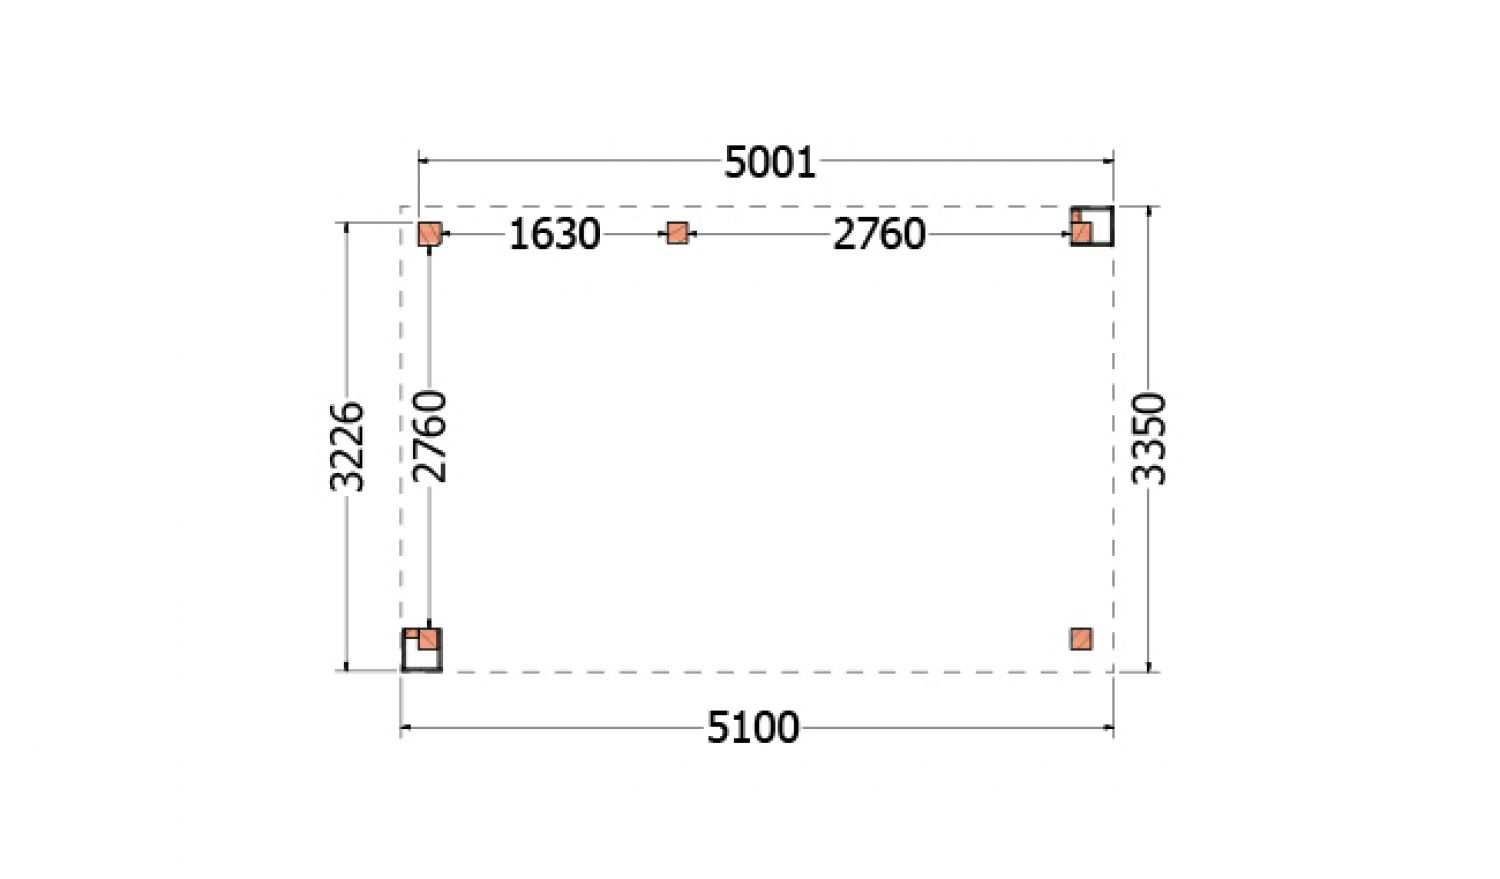 Buitenverblijf Verona 510x335 cm - Plat dak model links - plattegrond